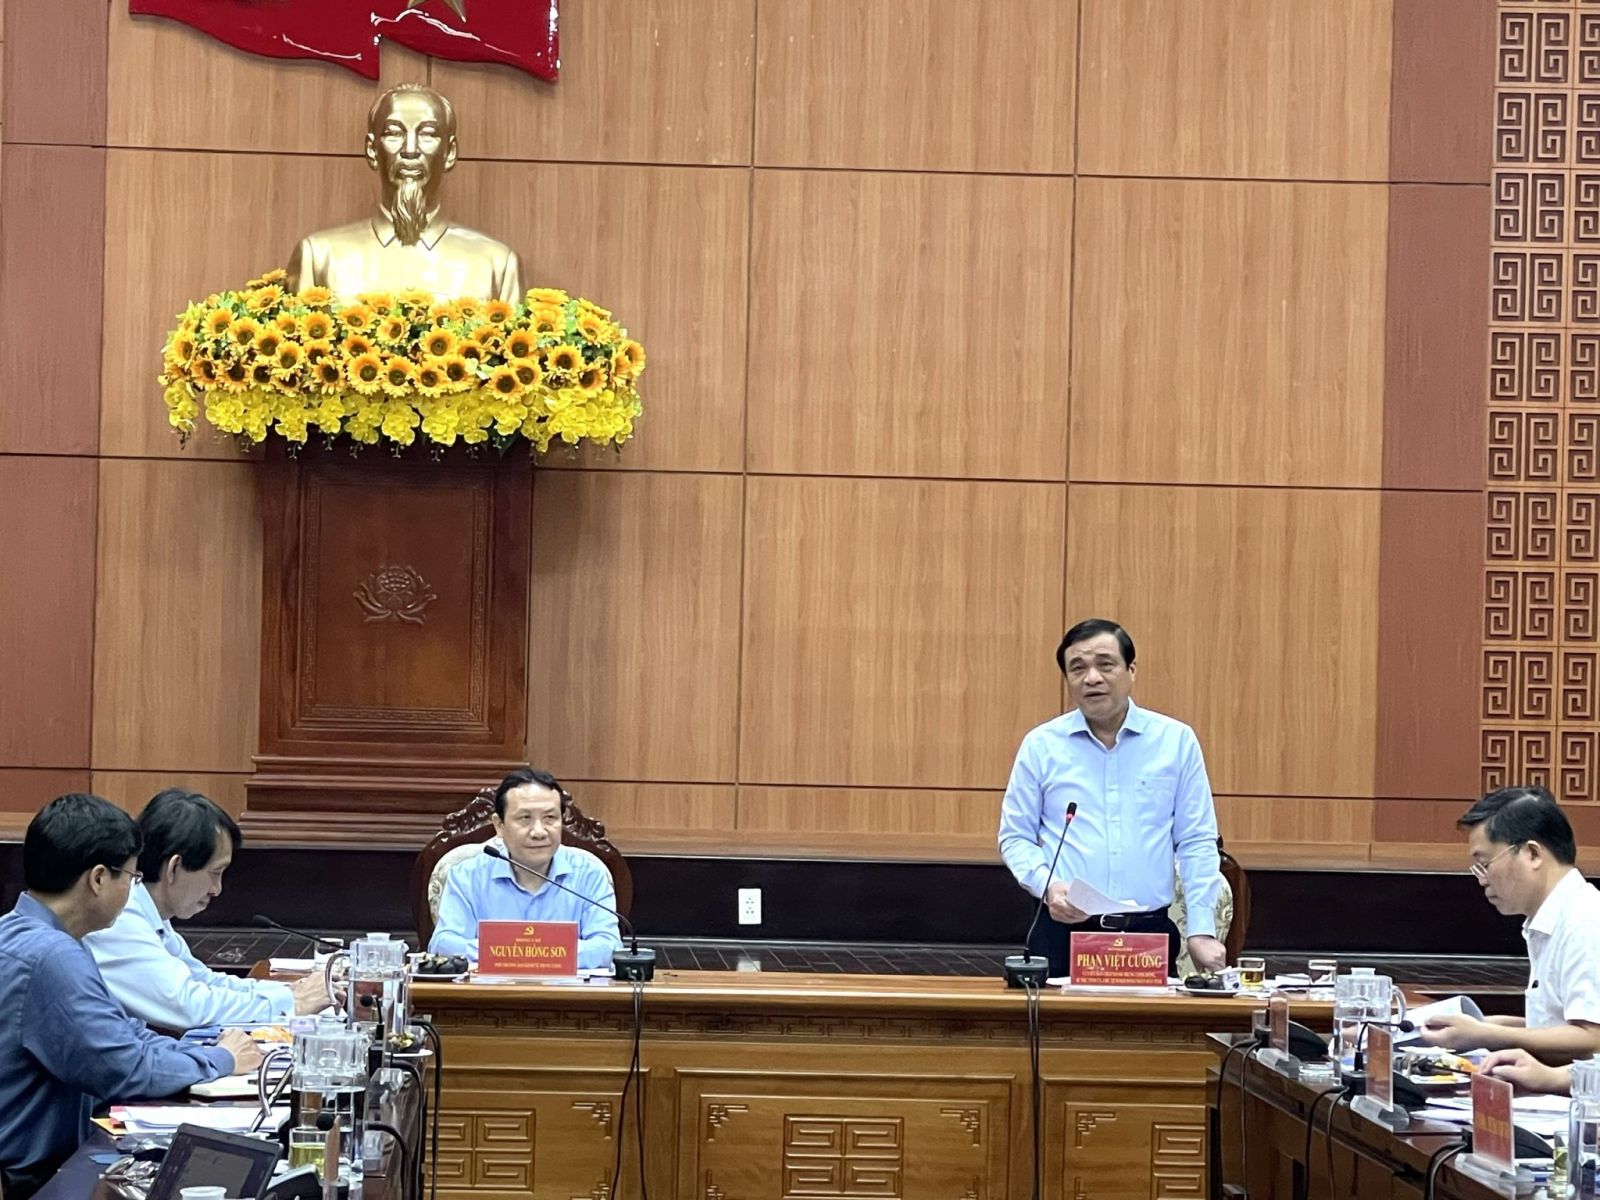 Đoàn công tác của Thường trực Ban Chỉ đạo tổng kết Nghị quyết số 39-NQ/TW của Bộ Chính trị Khóa IX làm việc và khảo sát tại tỉnh Quảng Nam